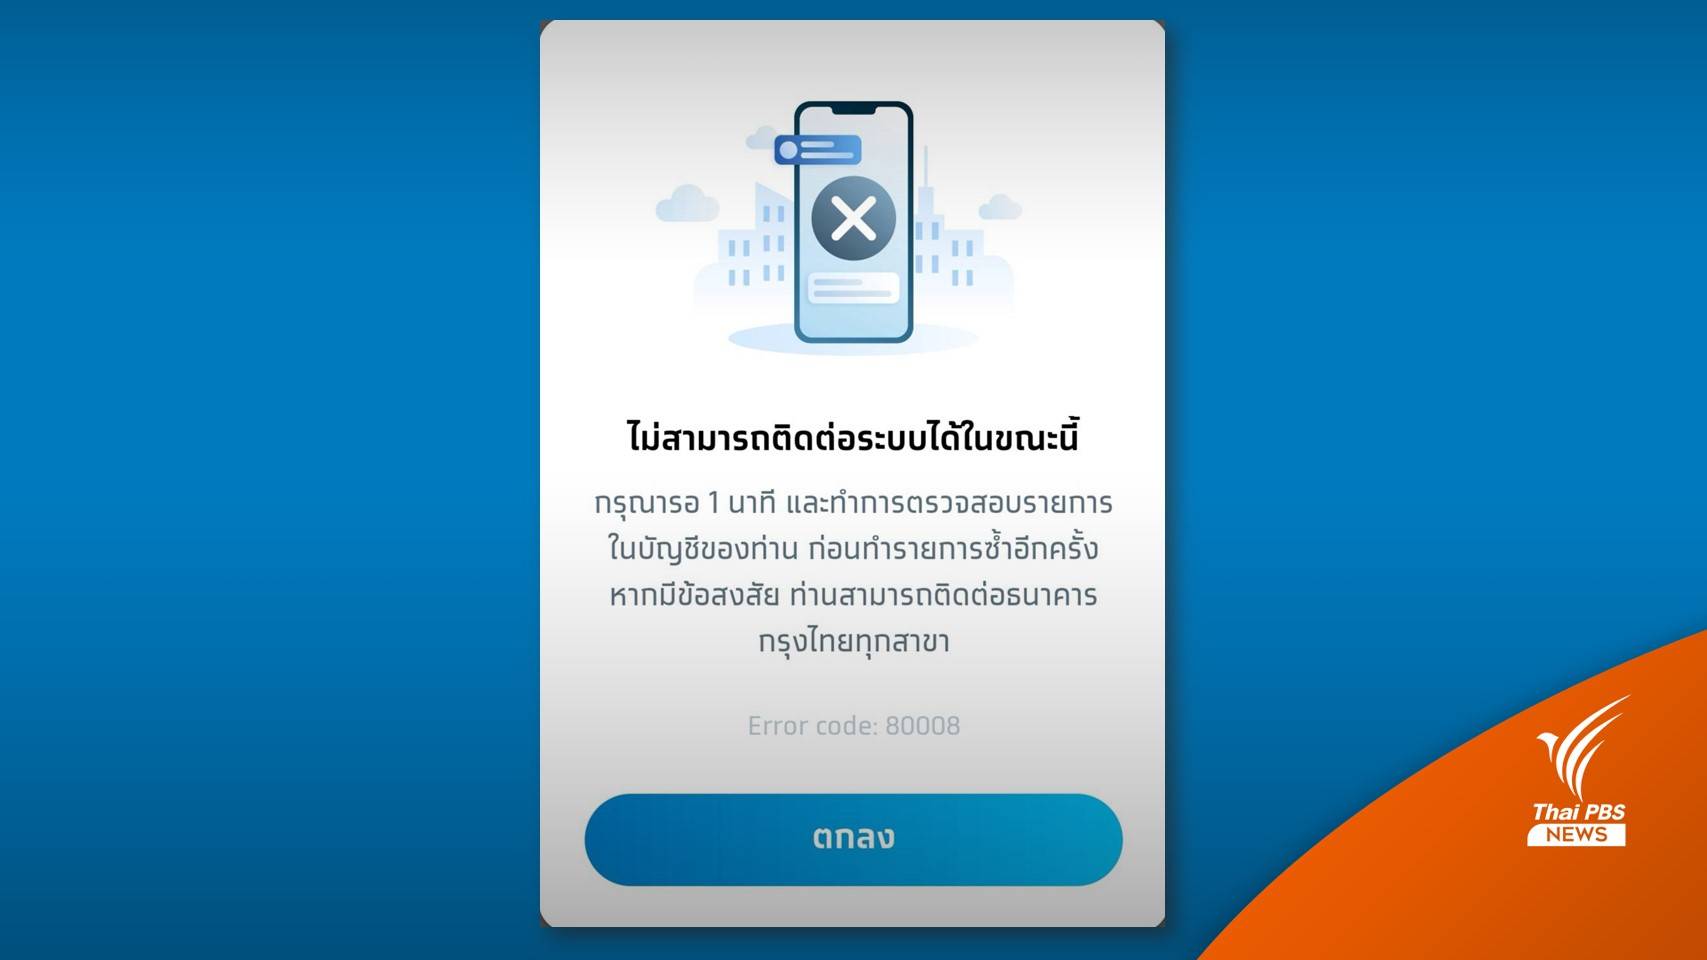 ทวิตเตอร์ติดเทรนด์ #กรุงไทยล่ม โอดโอนเงินไม่ได้ | Thai Pbs News ข่าวไทย พีบีเอส